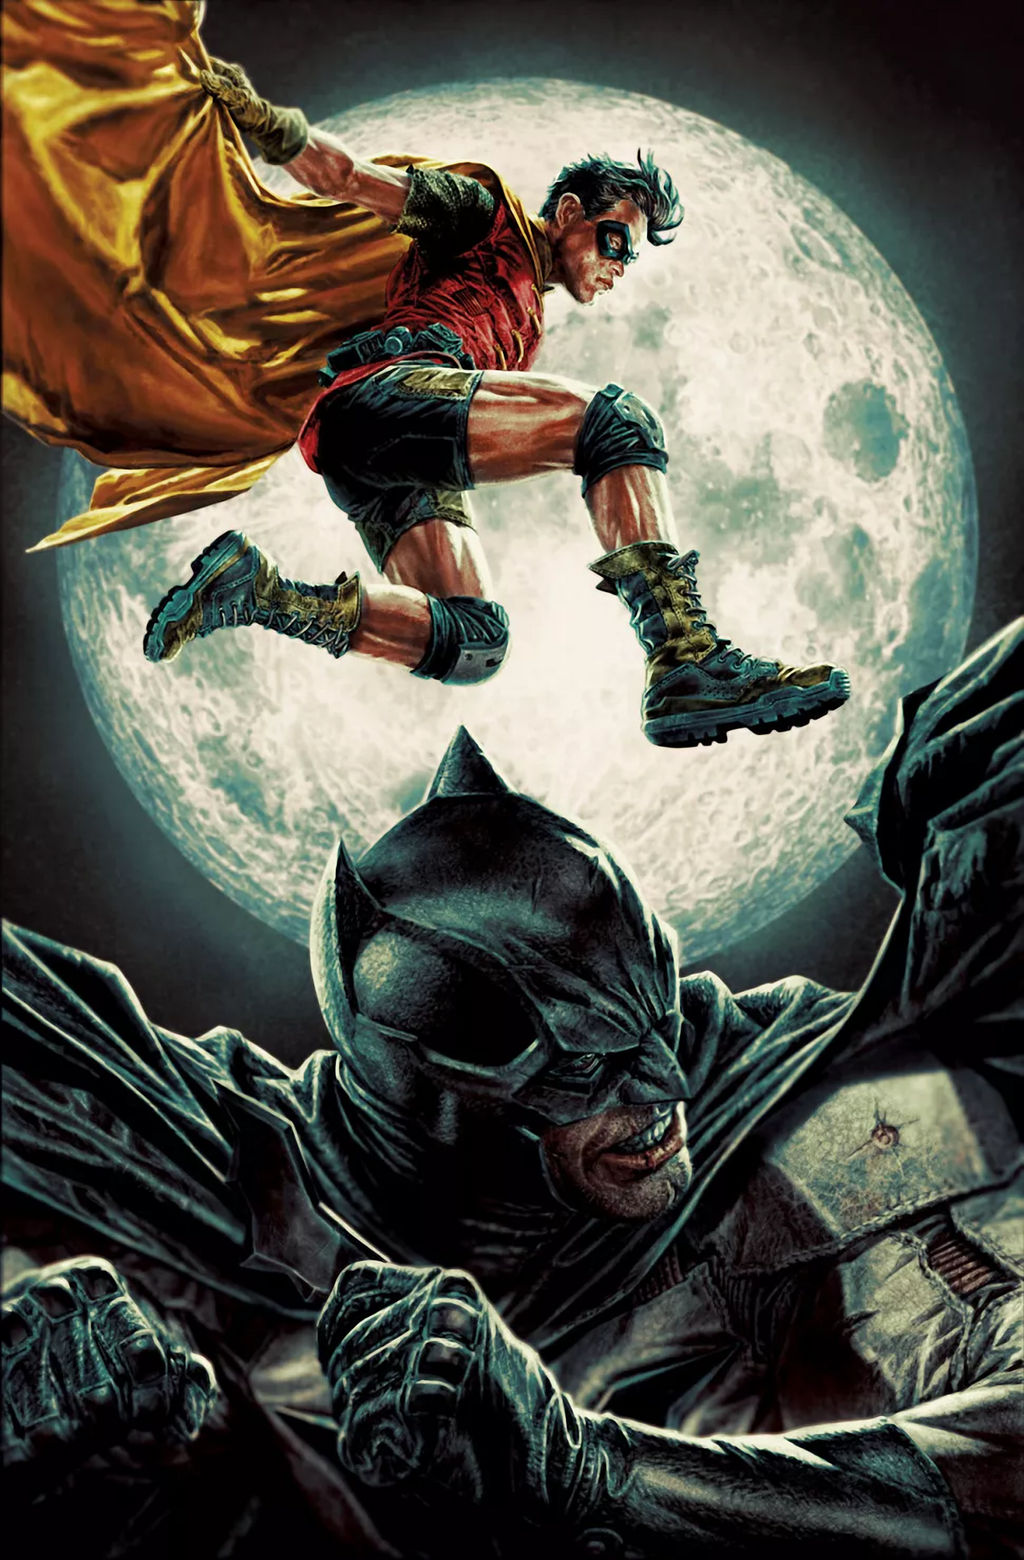 Batman and Robin by Lee Bermejo New Cover by BatmanMoumen on DeviantArt